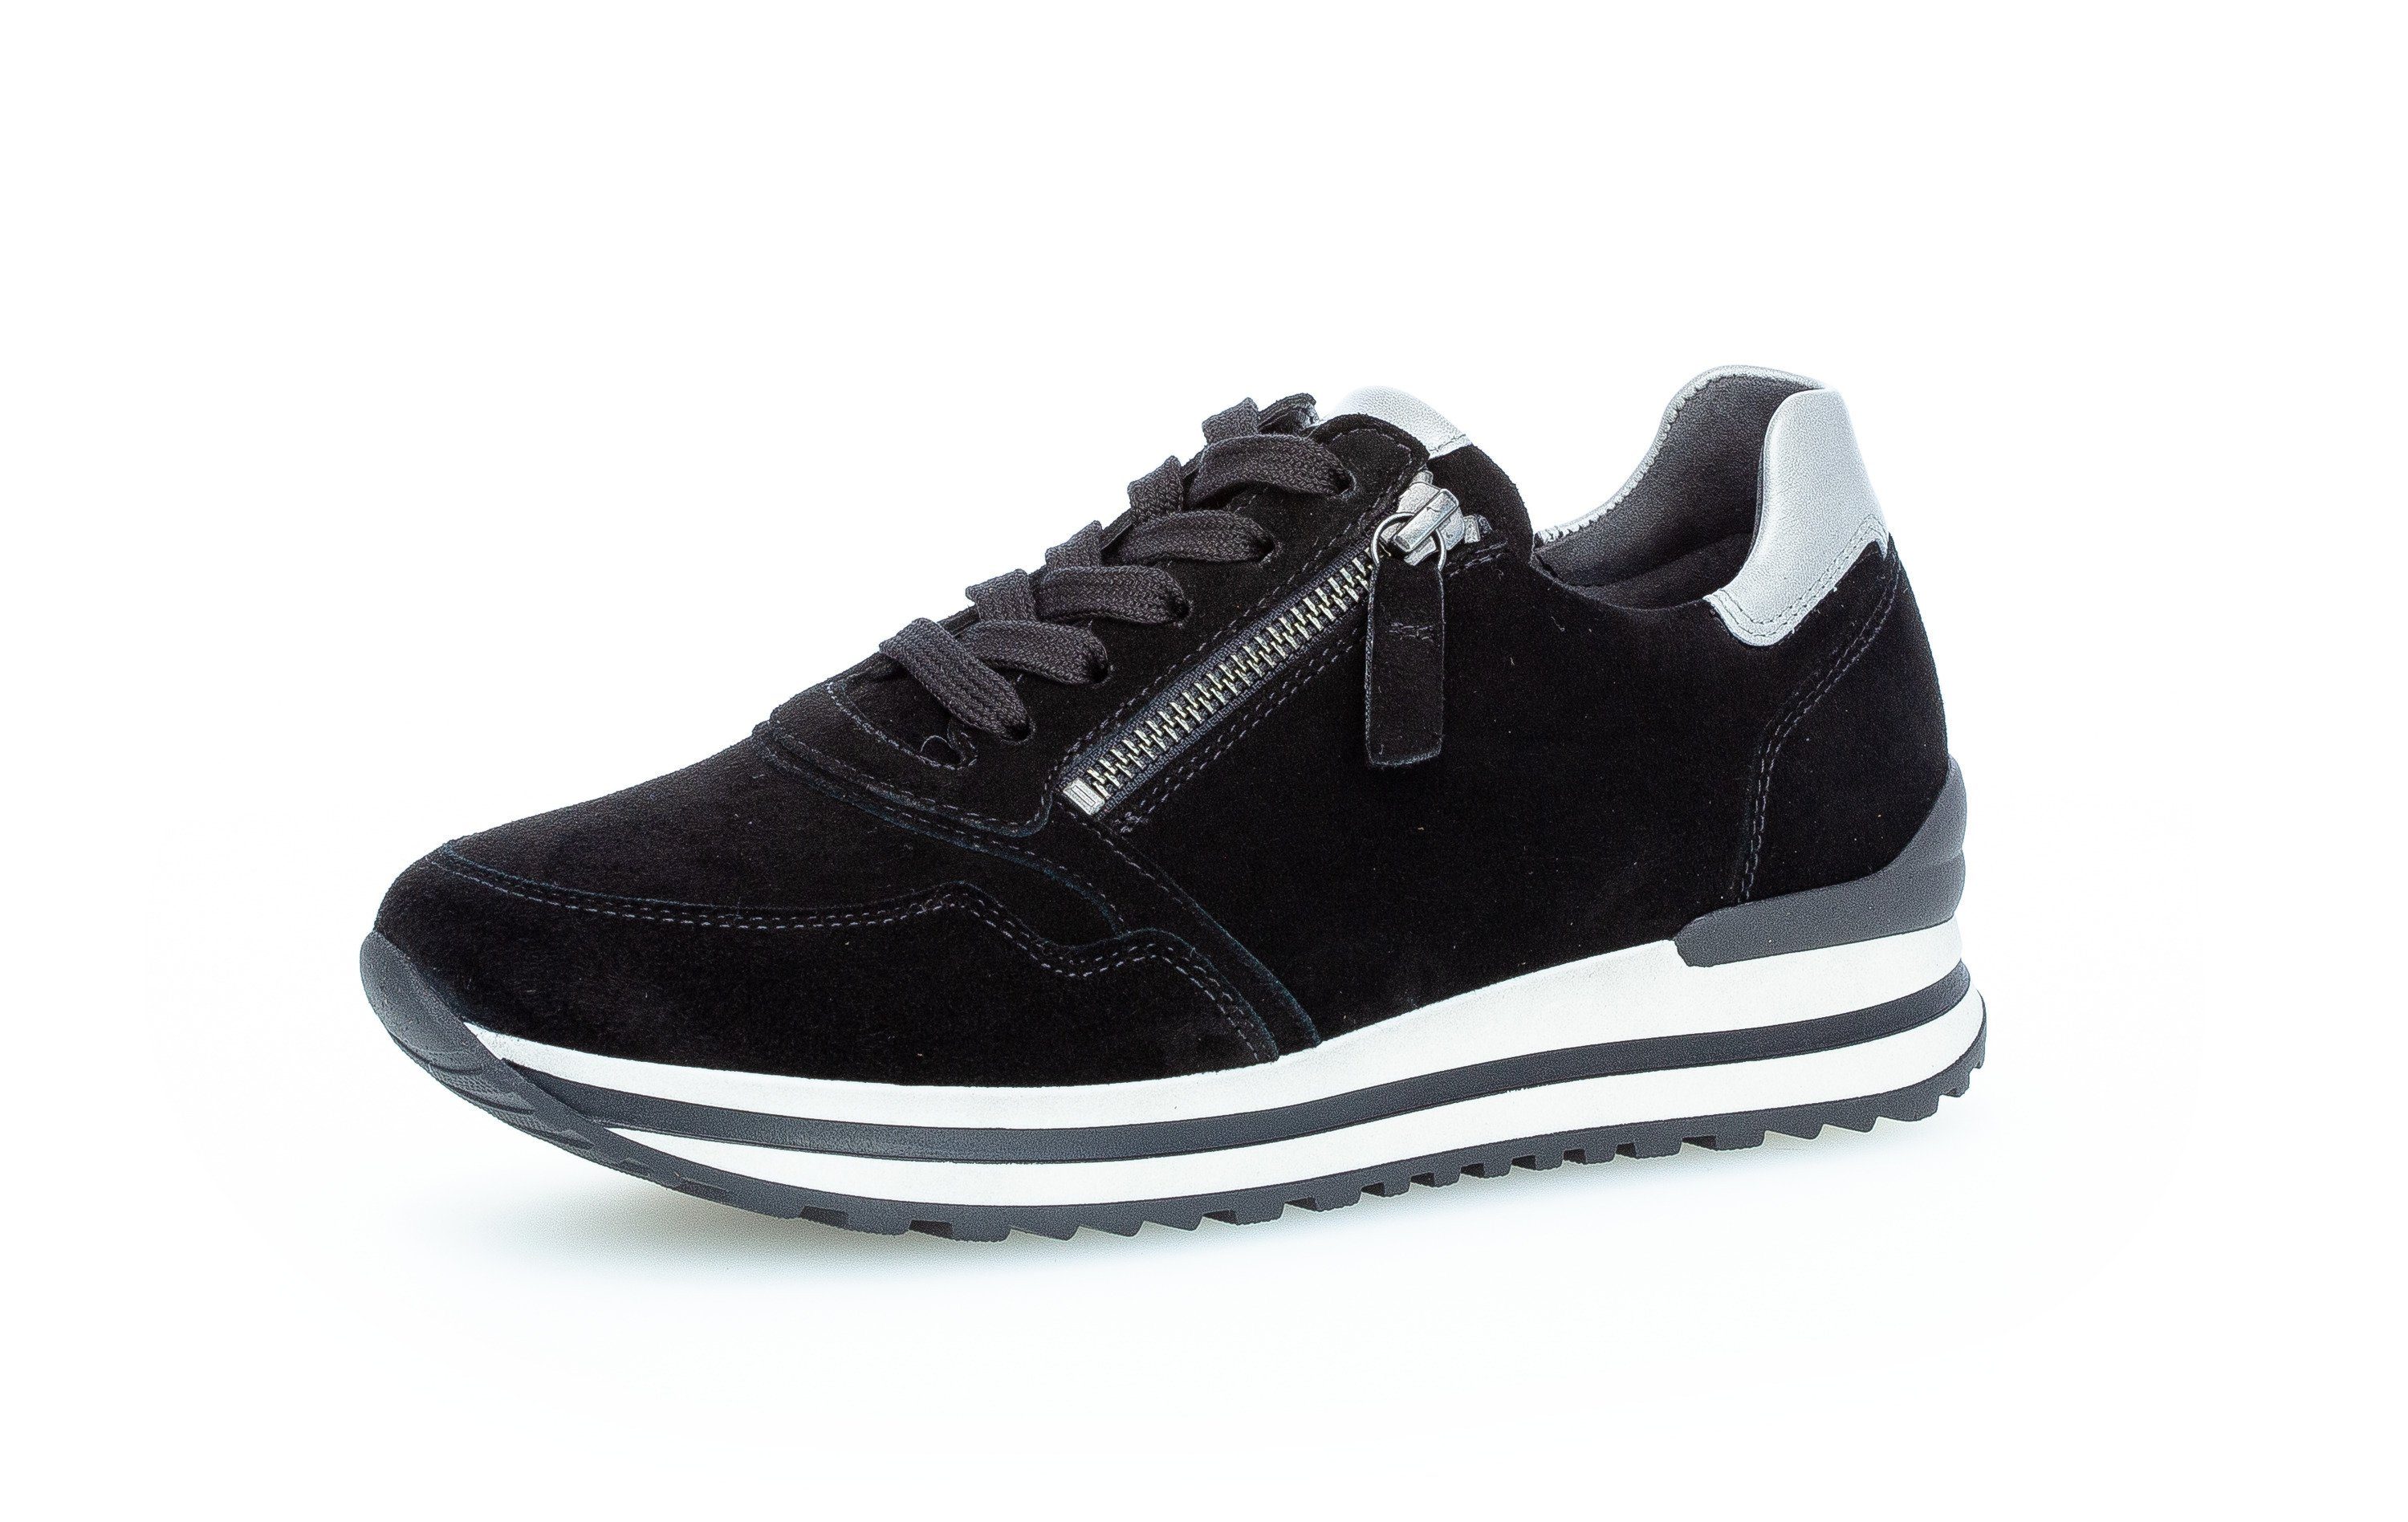 schwarz-bunt-kombiniert-schwarz-bunt-kombiniert Comfort Sneaker Gabor